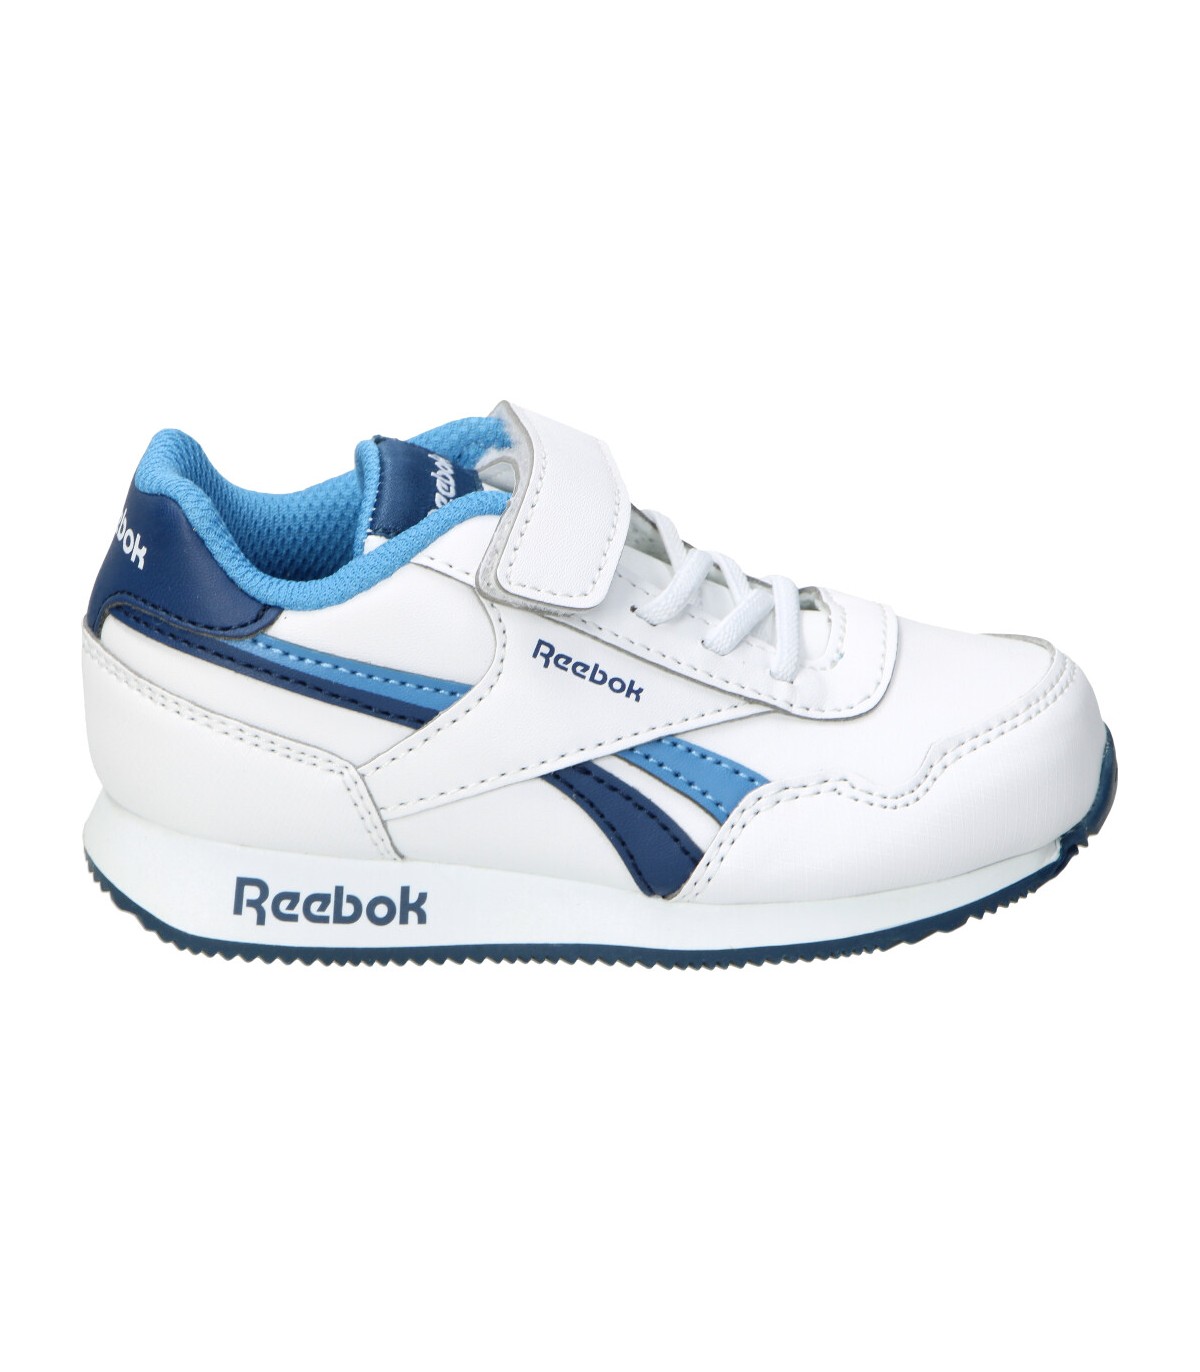  Reebok - Zapatillas deportivas para hombre, color